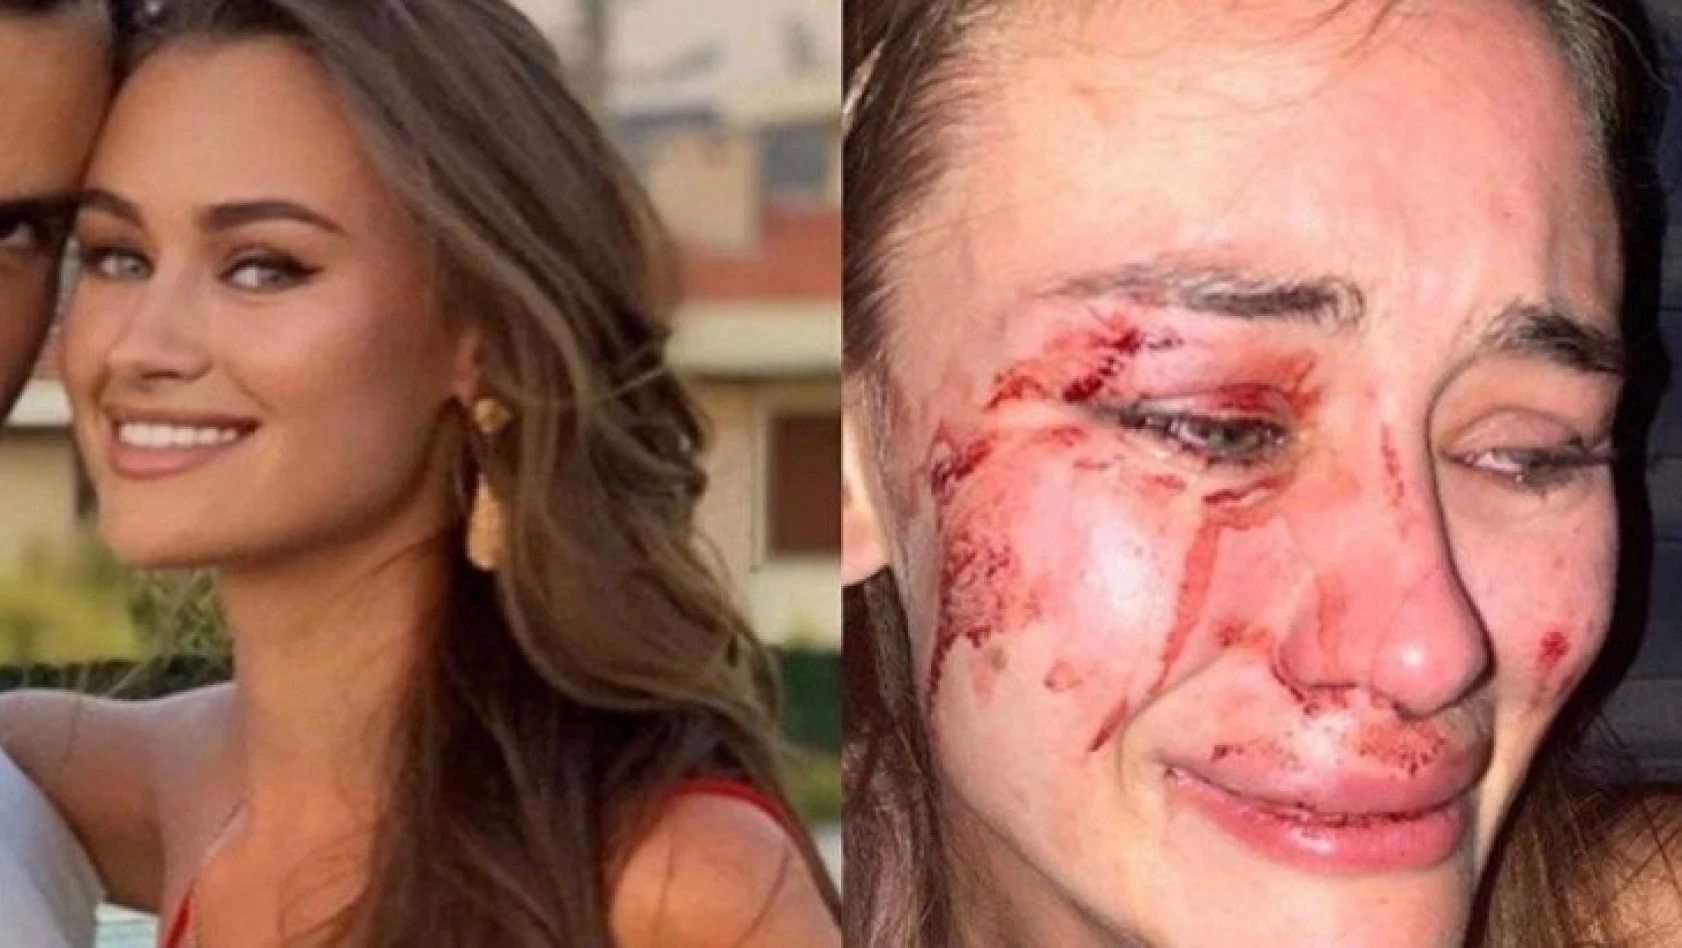 Ünlü model Daria Kyryliuk İzmir'de güvenlik görevlilerinin saldırısına uğradı